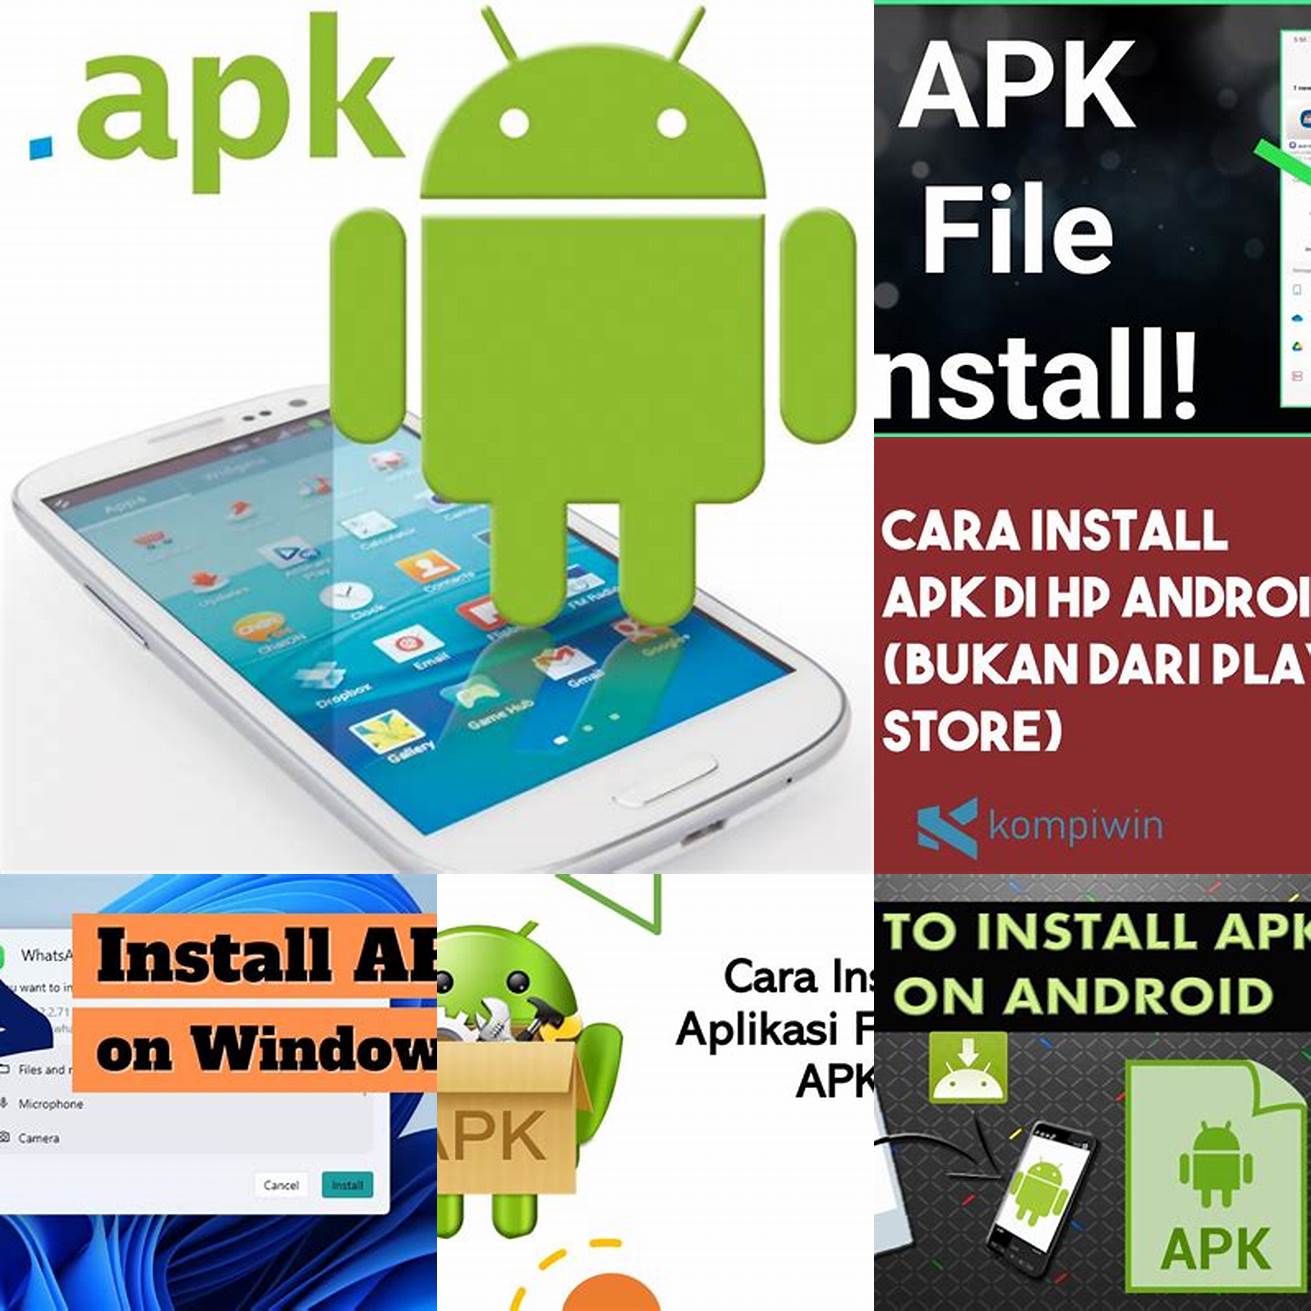 Instal APK file